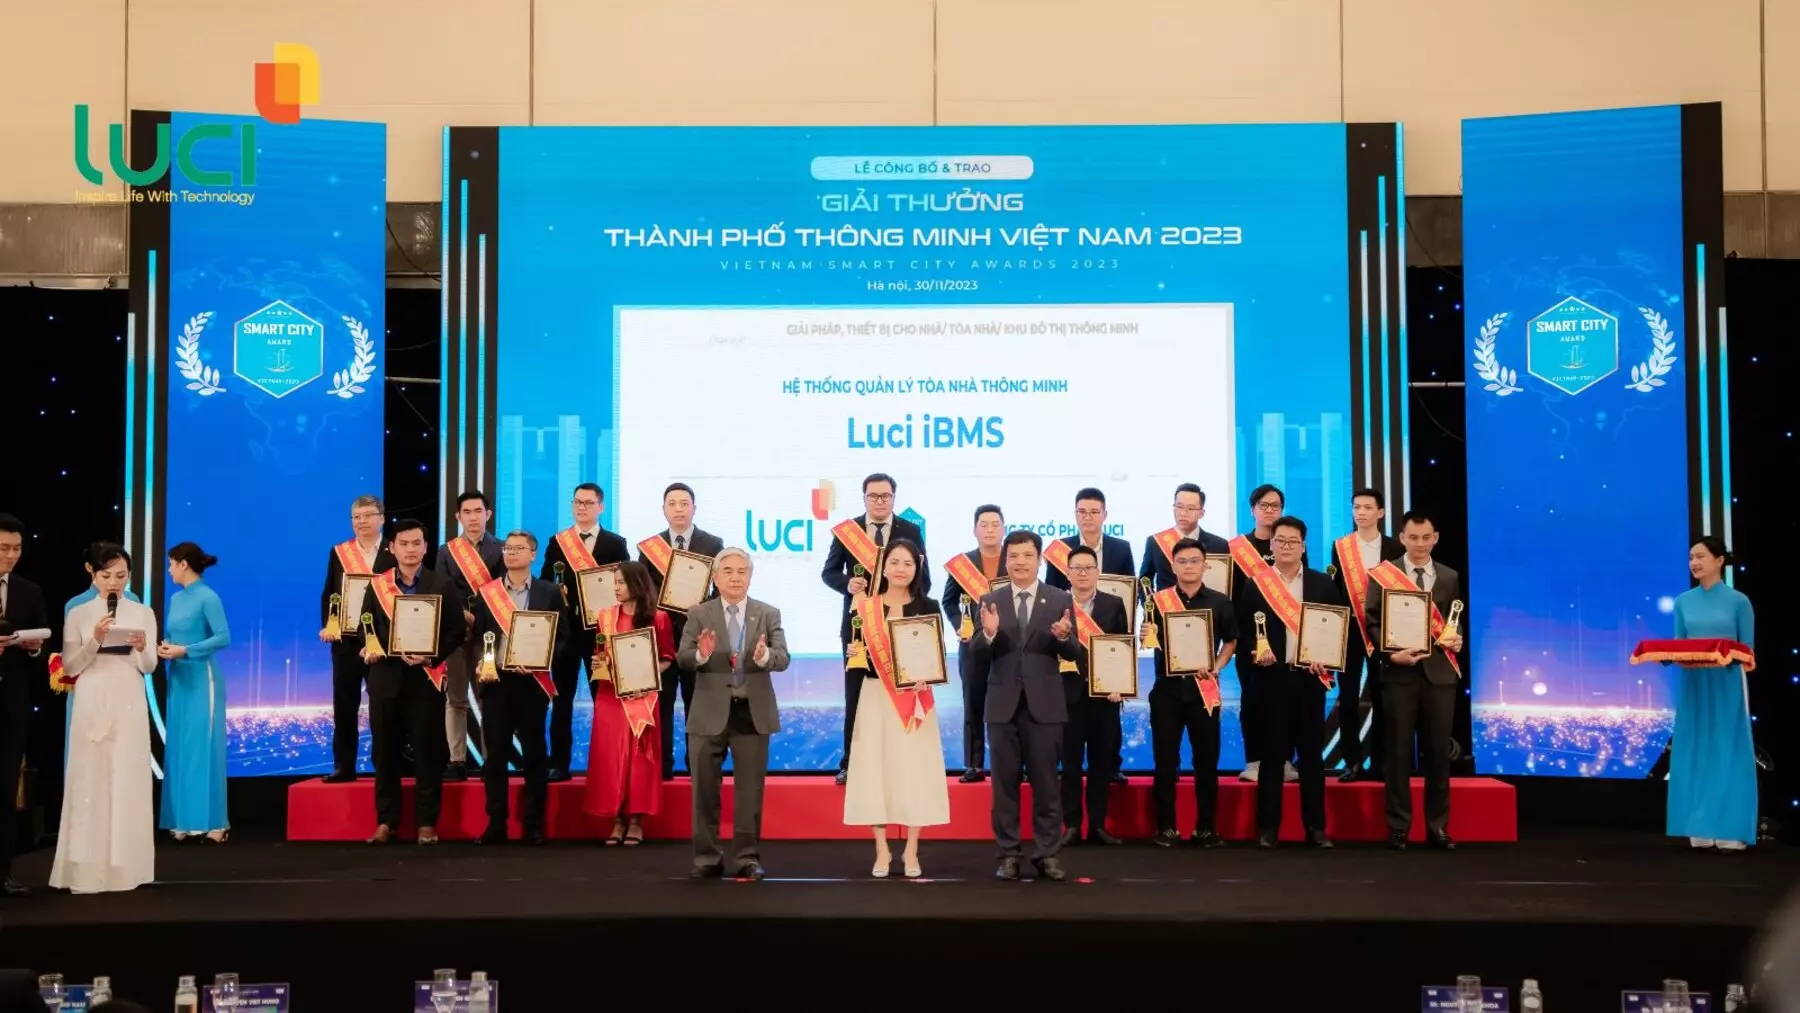 Giải pháp Hệ thống quản lý tòa nhà thông minh Luci iBMS nhận giải thưởng Thành phố thông minh Việt Nam 2023